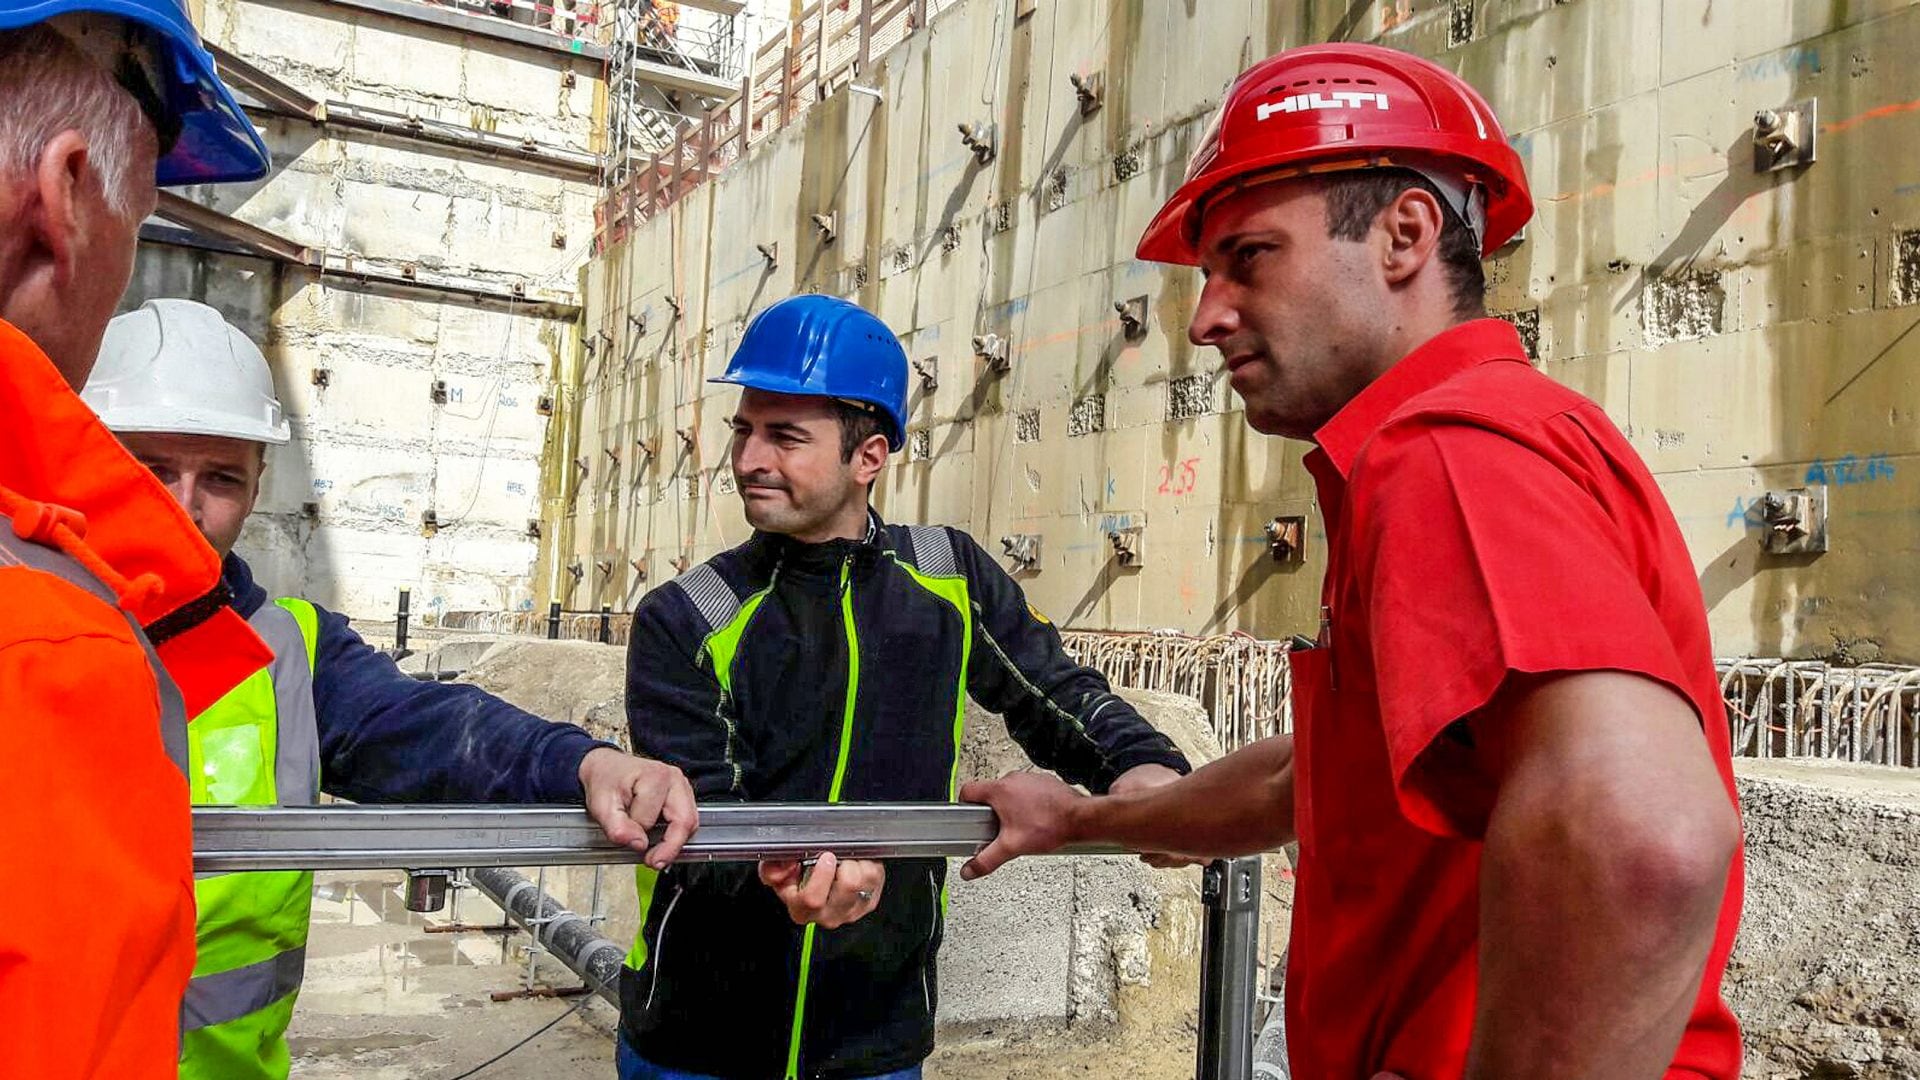 Werknemers op de bouwplaats in Zwitserland in gesprek met elkaar